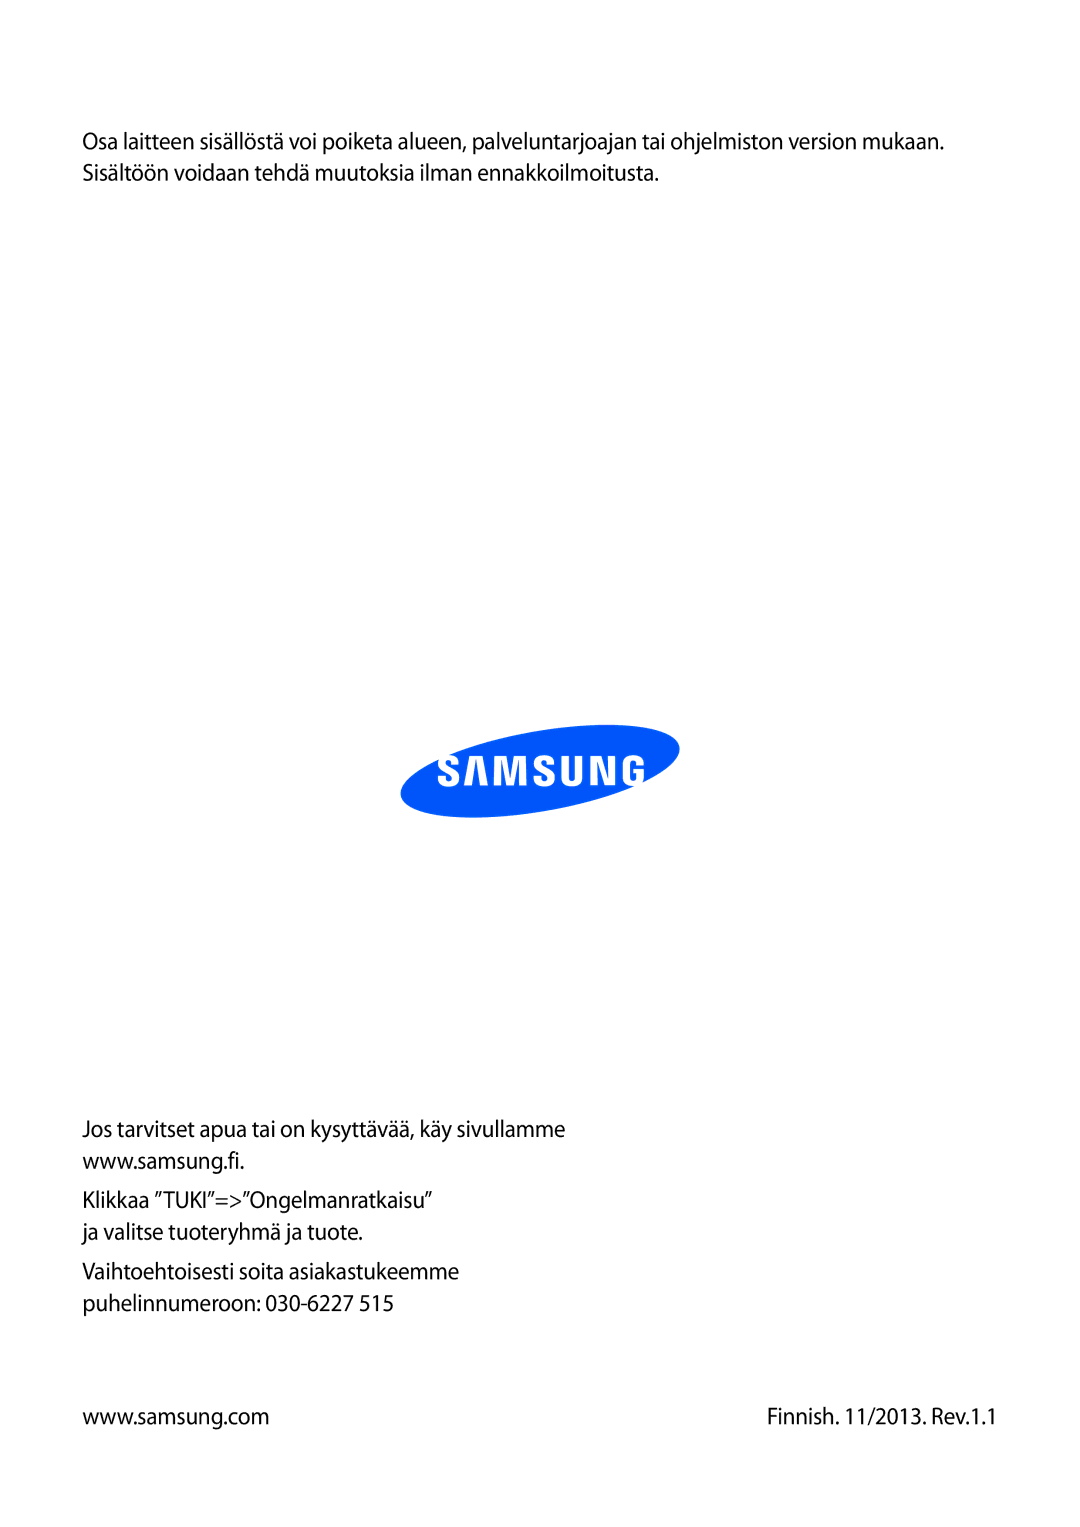 Samsung SM-G3815RWANEE, SM-G3815ZBANEE, SM-G3815HKANEE manual Finnish /2013. Rev.1.1 